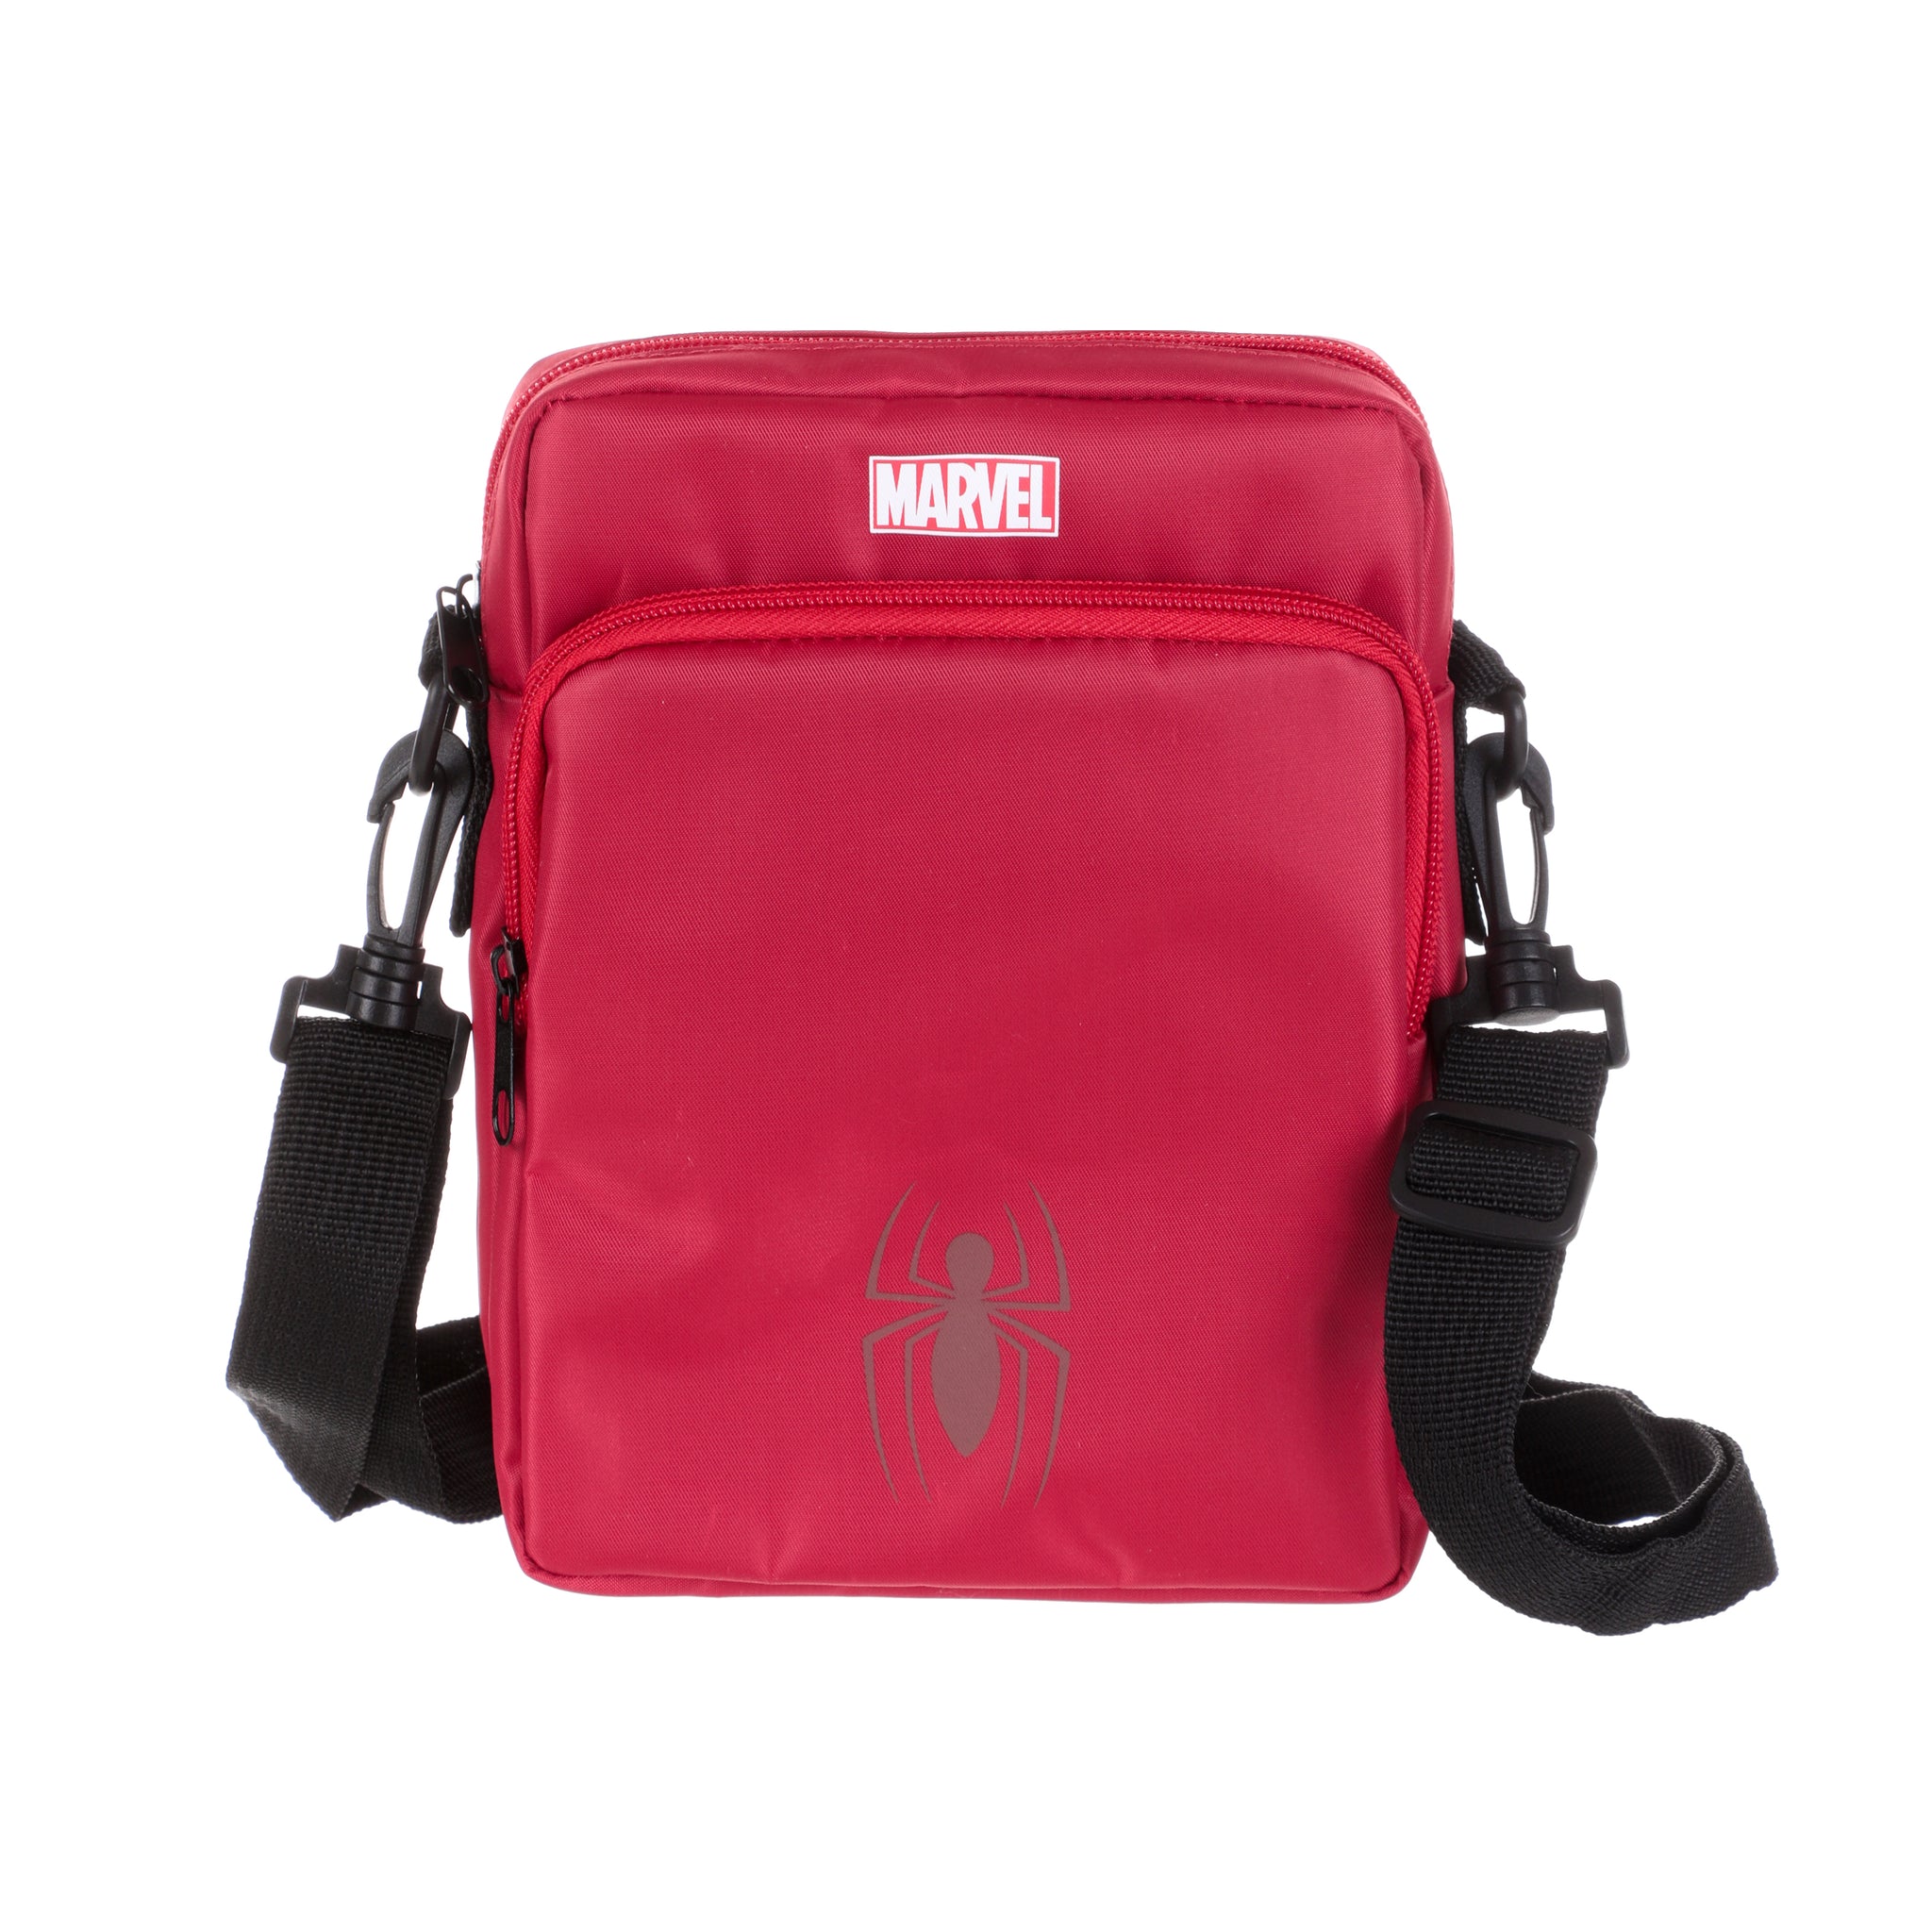 Miniso MARVEL Shopping Bag,Red